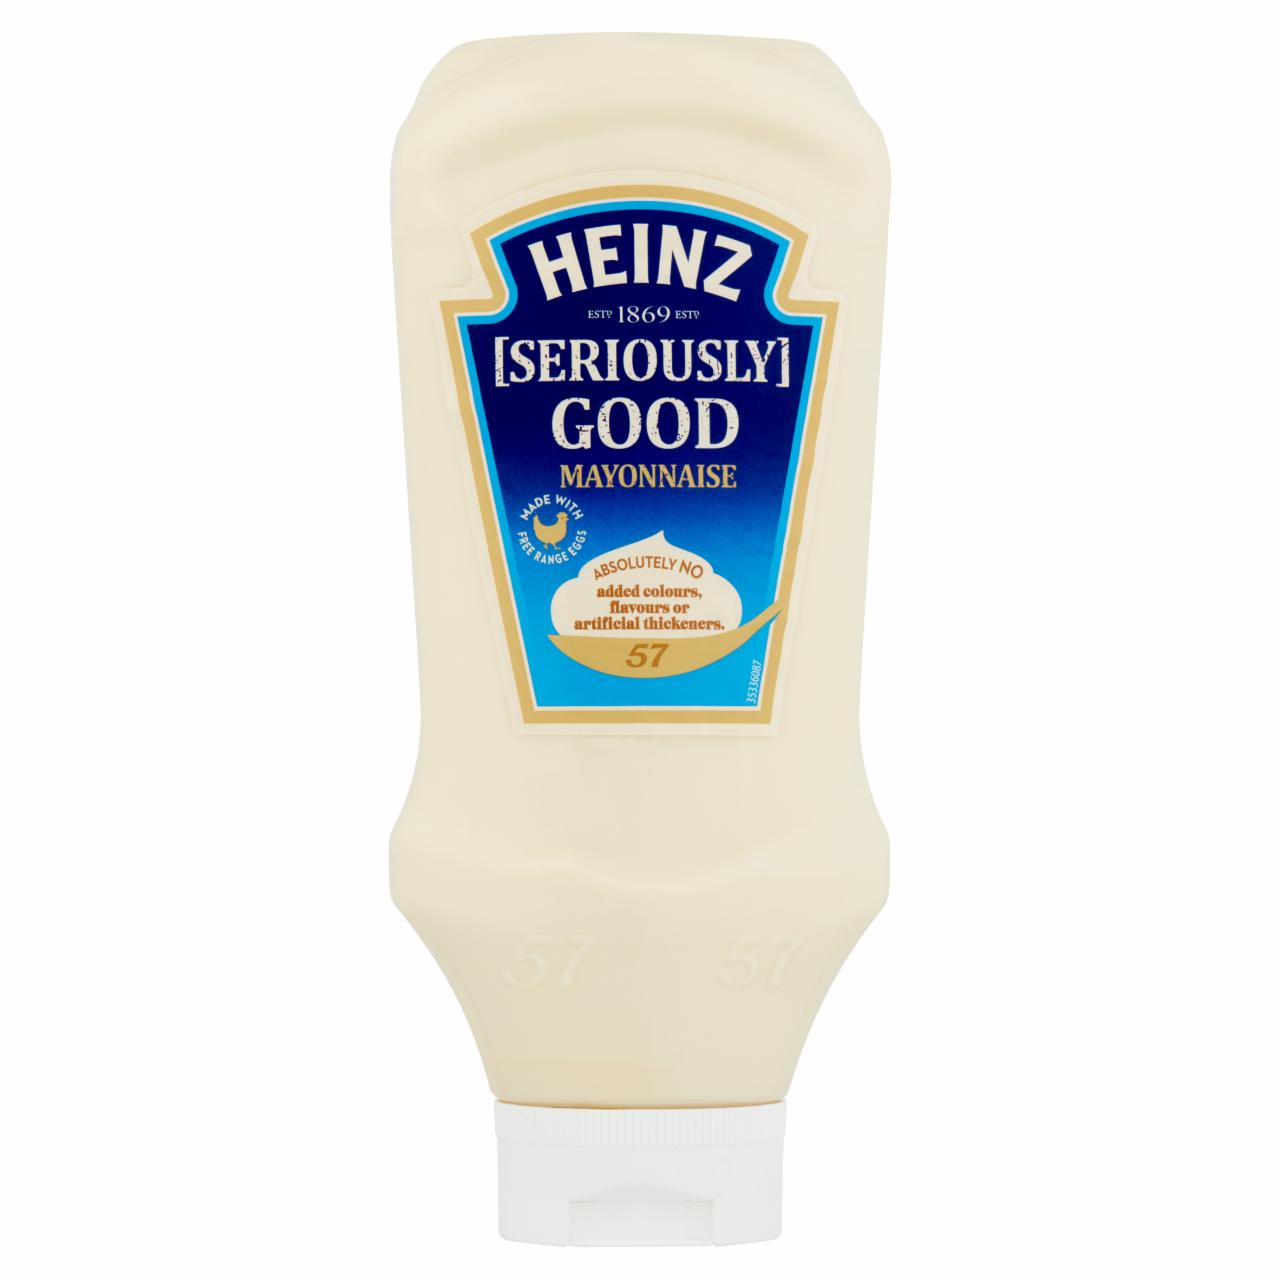 Képek - Heinz majonéz 70% zsírtartalommal 775 g